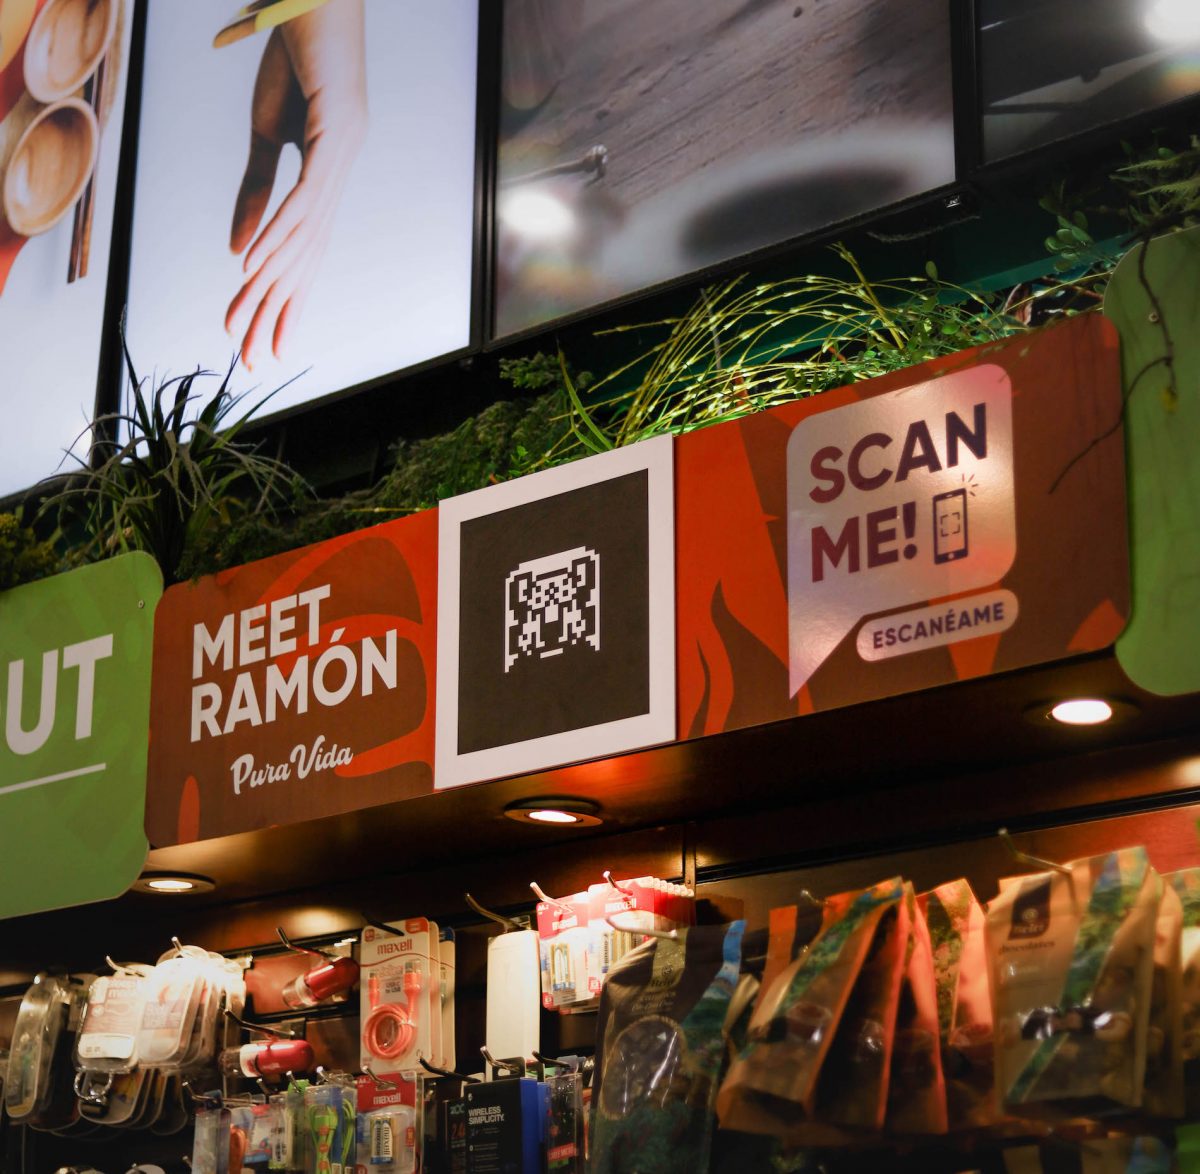 Tienda Britt Shop Costa Rica es la primera en la región en tener realidad aumentada